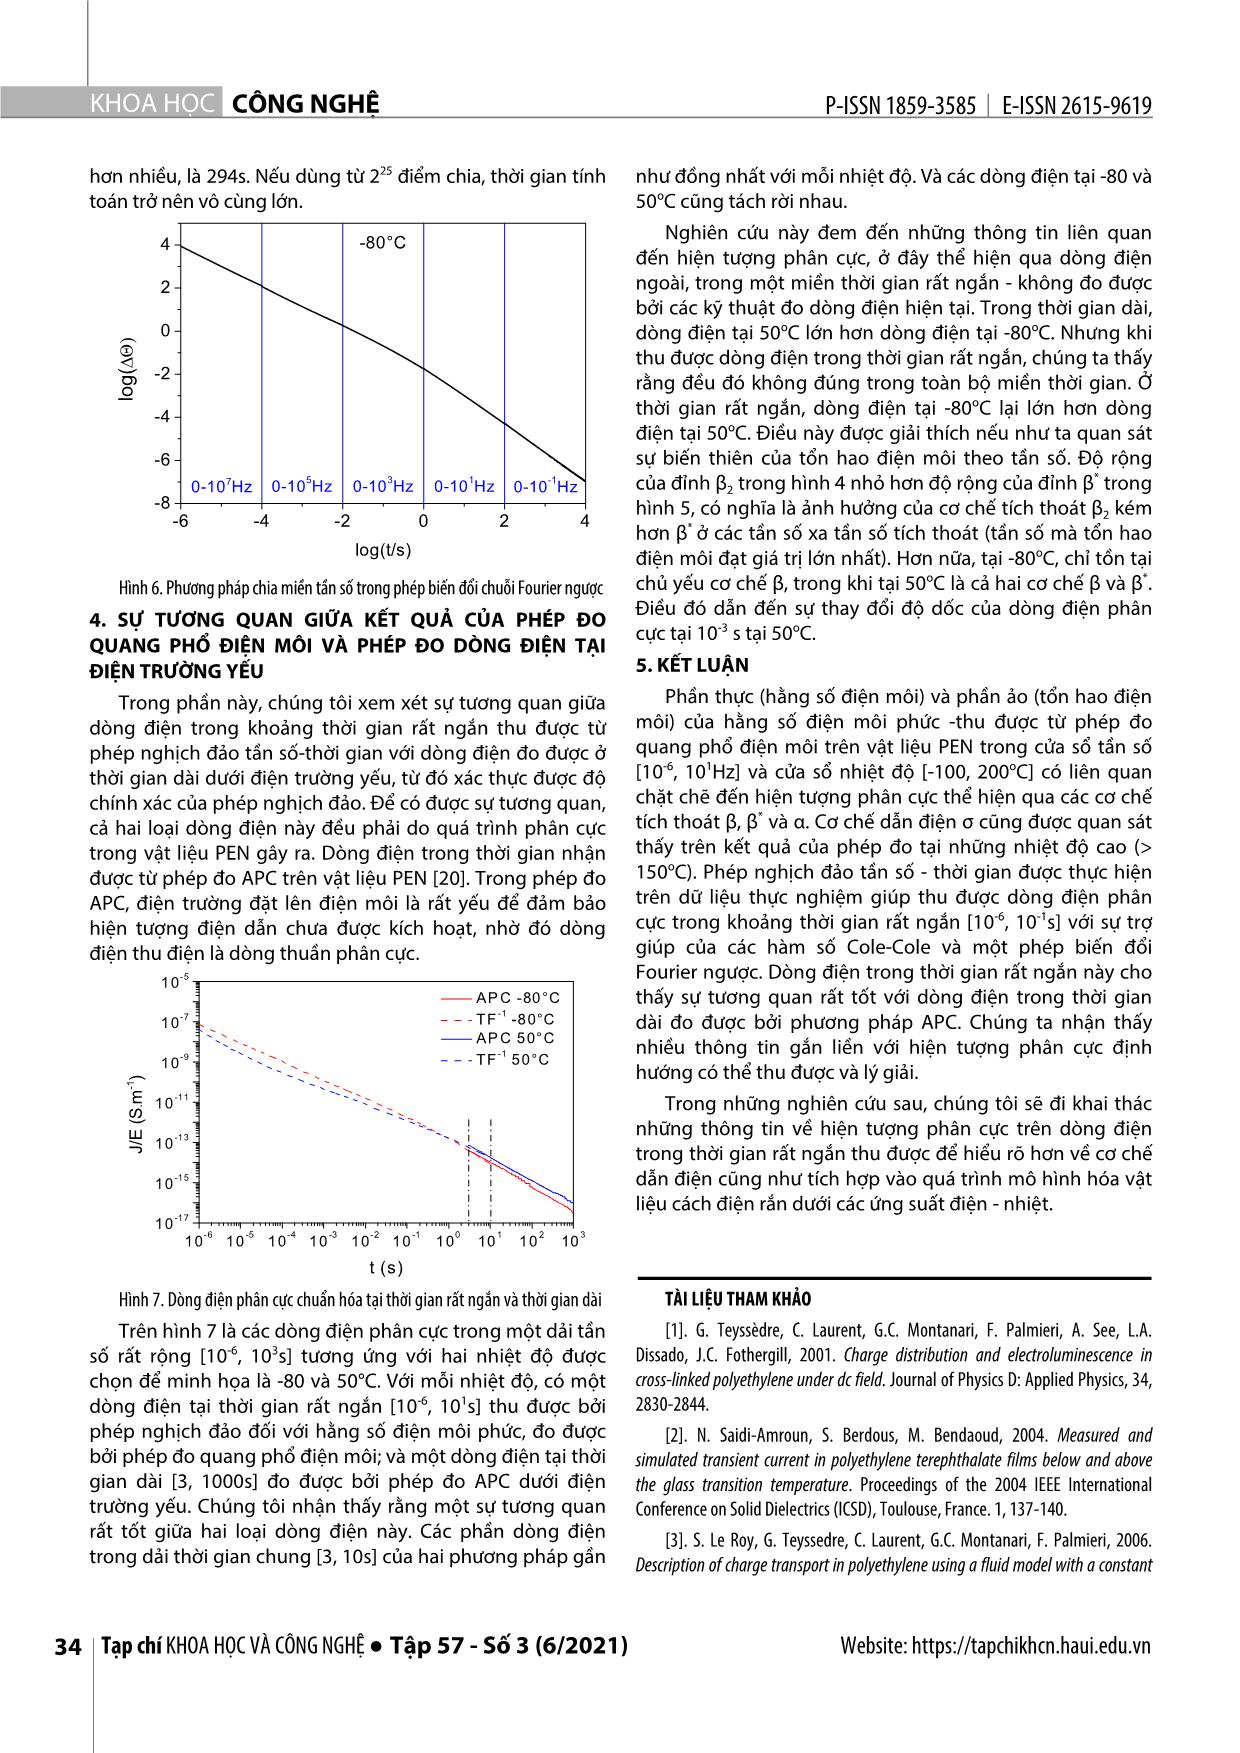 Phương pháp nghịch đảo để thu được dòng điện phân cực trong thời gian rất ngắn từ phép đo quang phổ điện môi trên vật liệu PEN trang 6